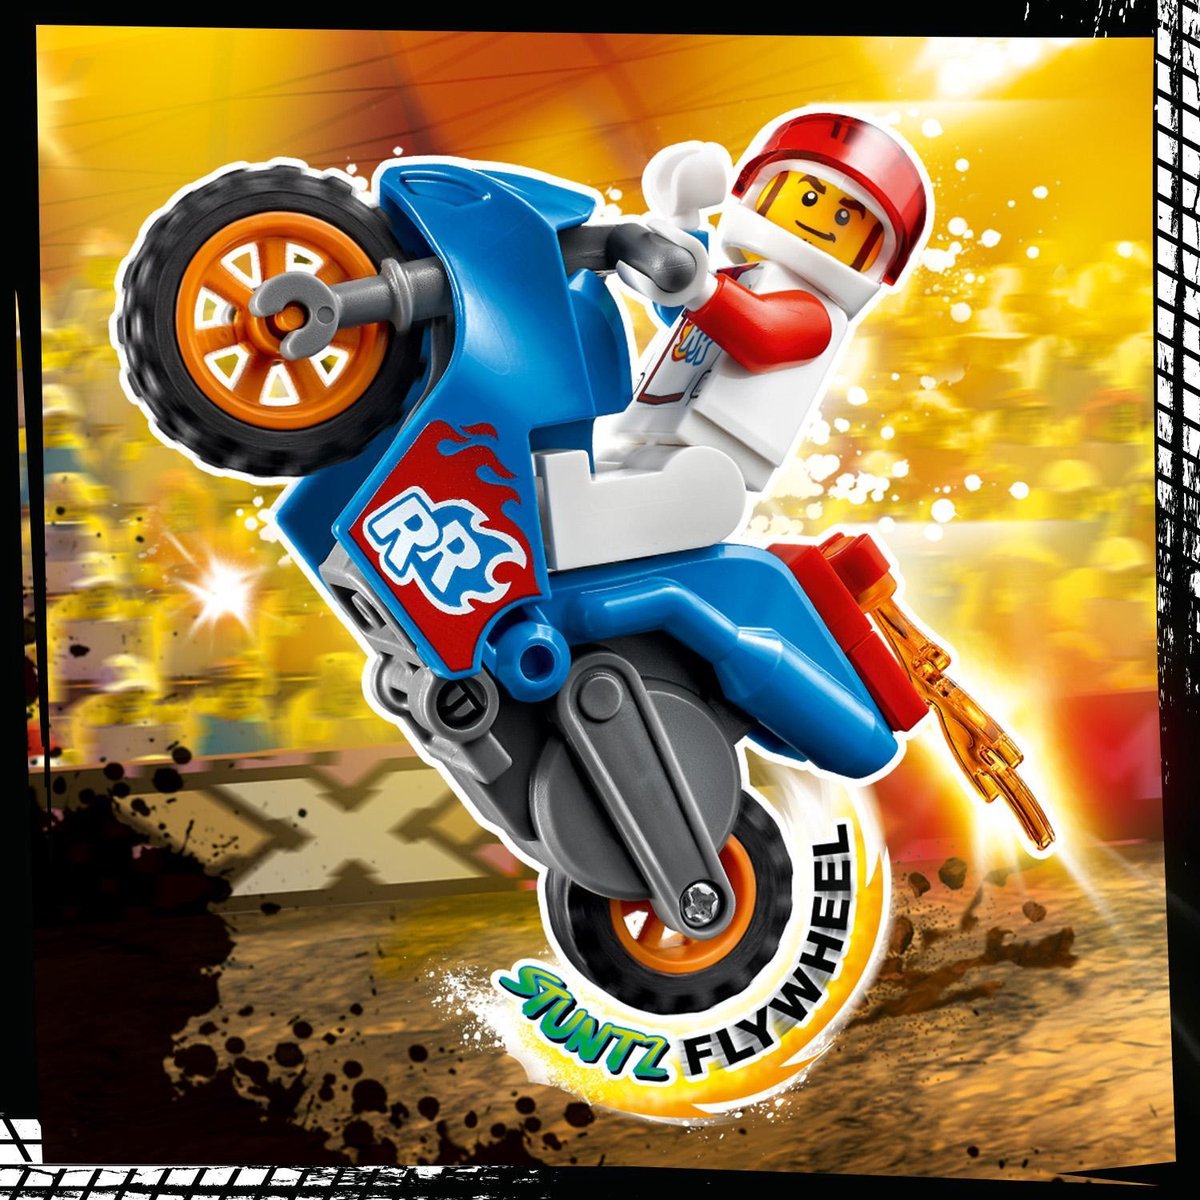 Lego 60298 city stuntz la moto de cascade fusée, moto a